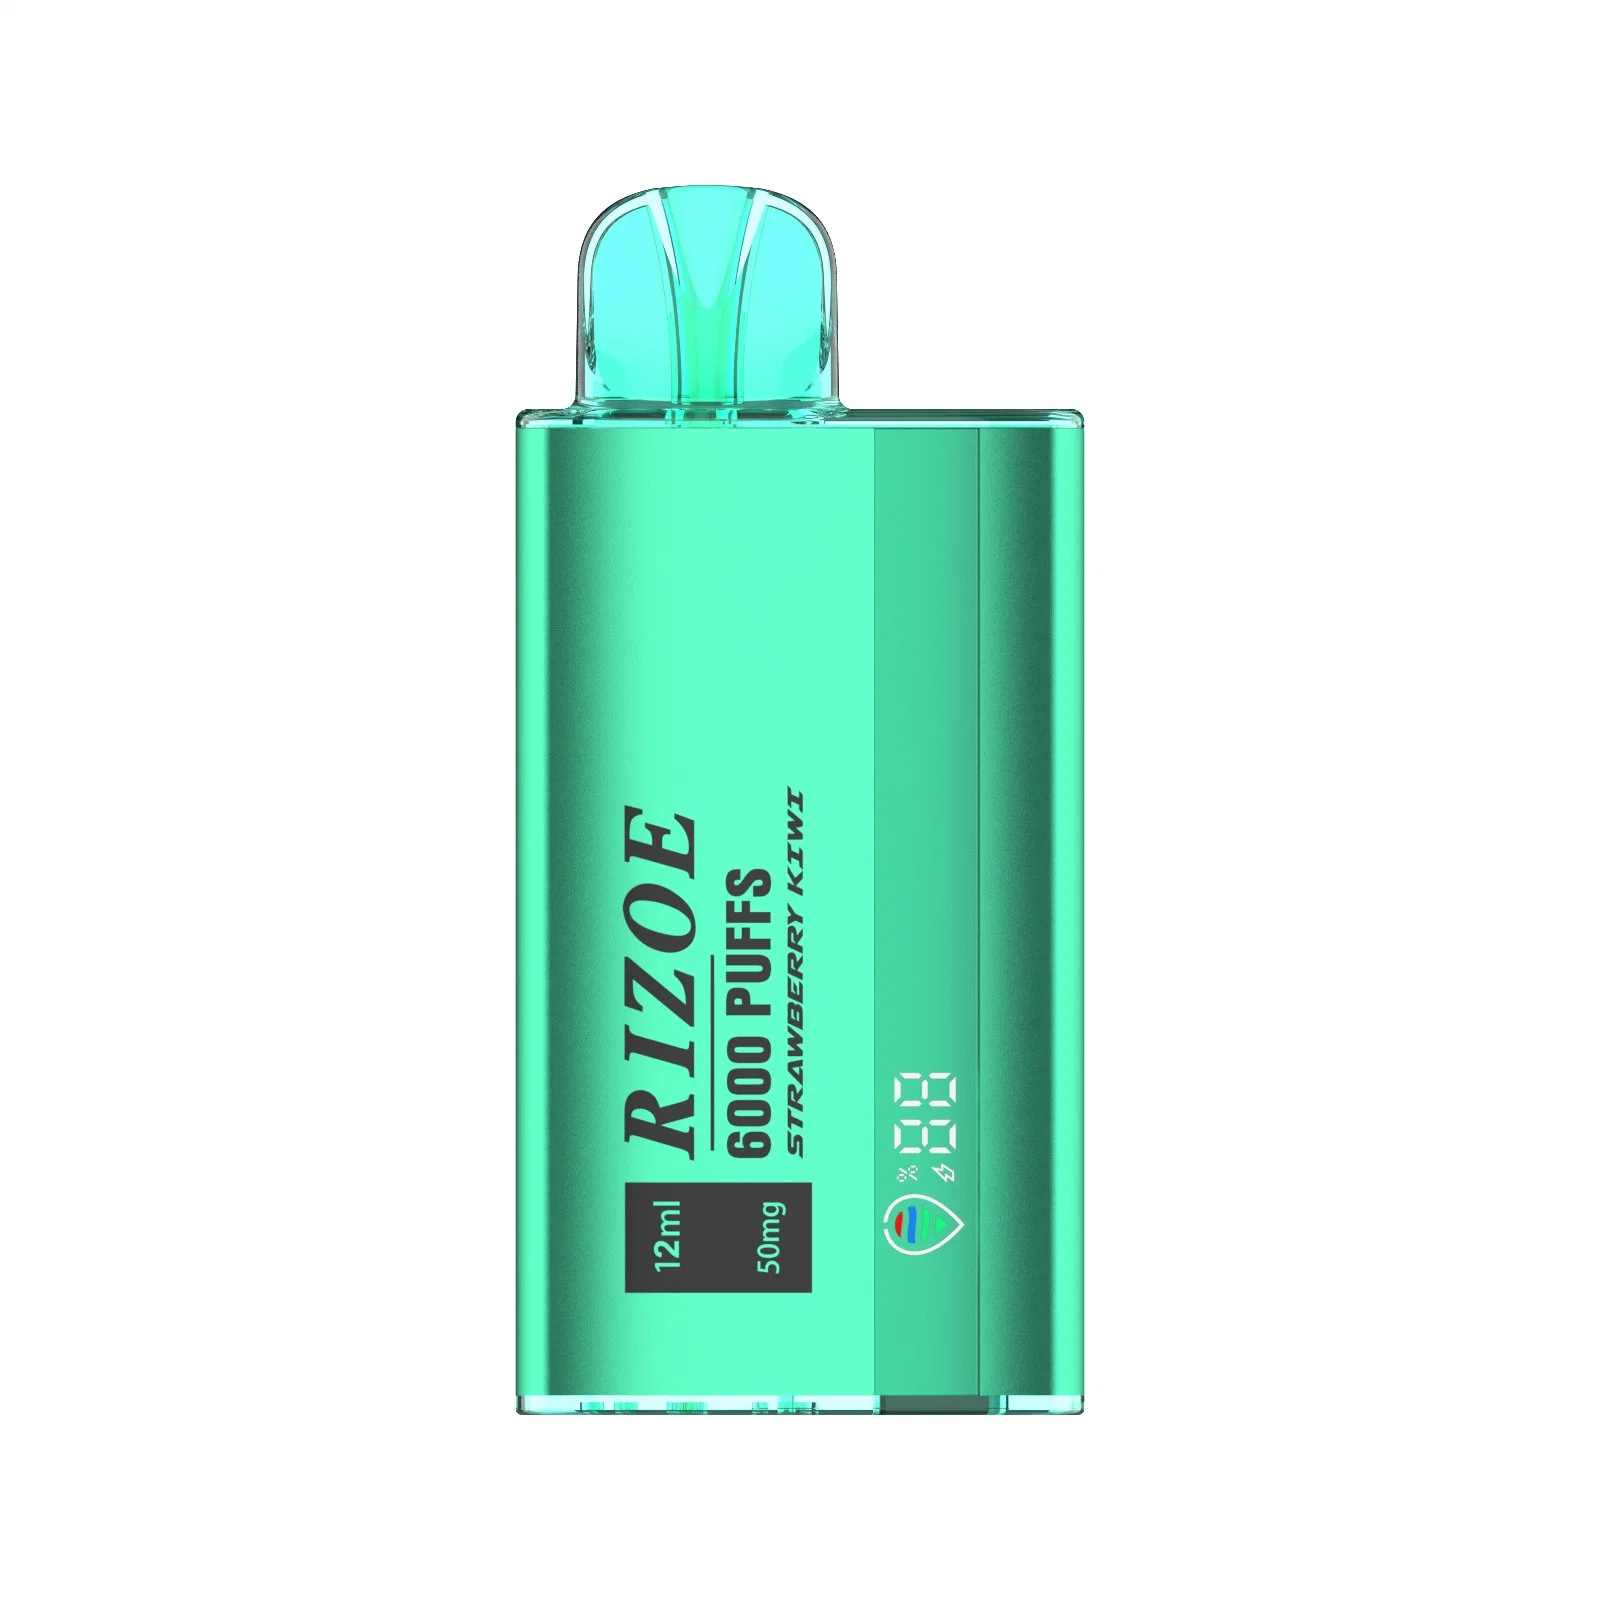 Online Shopping Joecig Disposable Vape Kit Smoking Electronic Cigarette